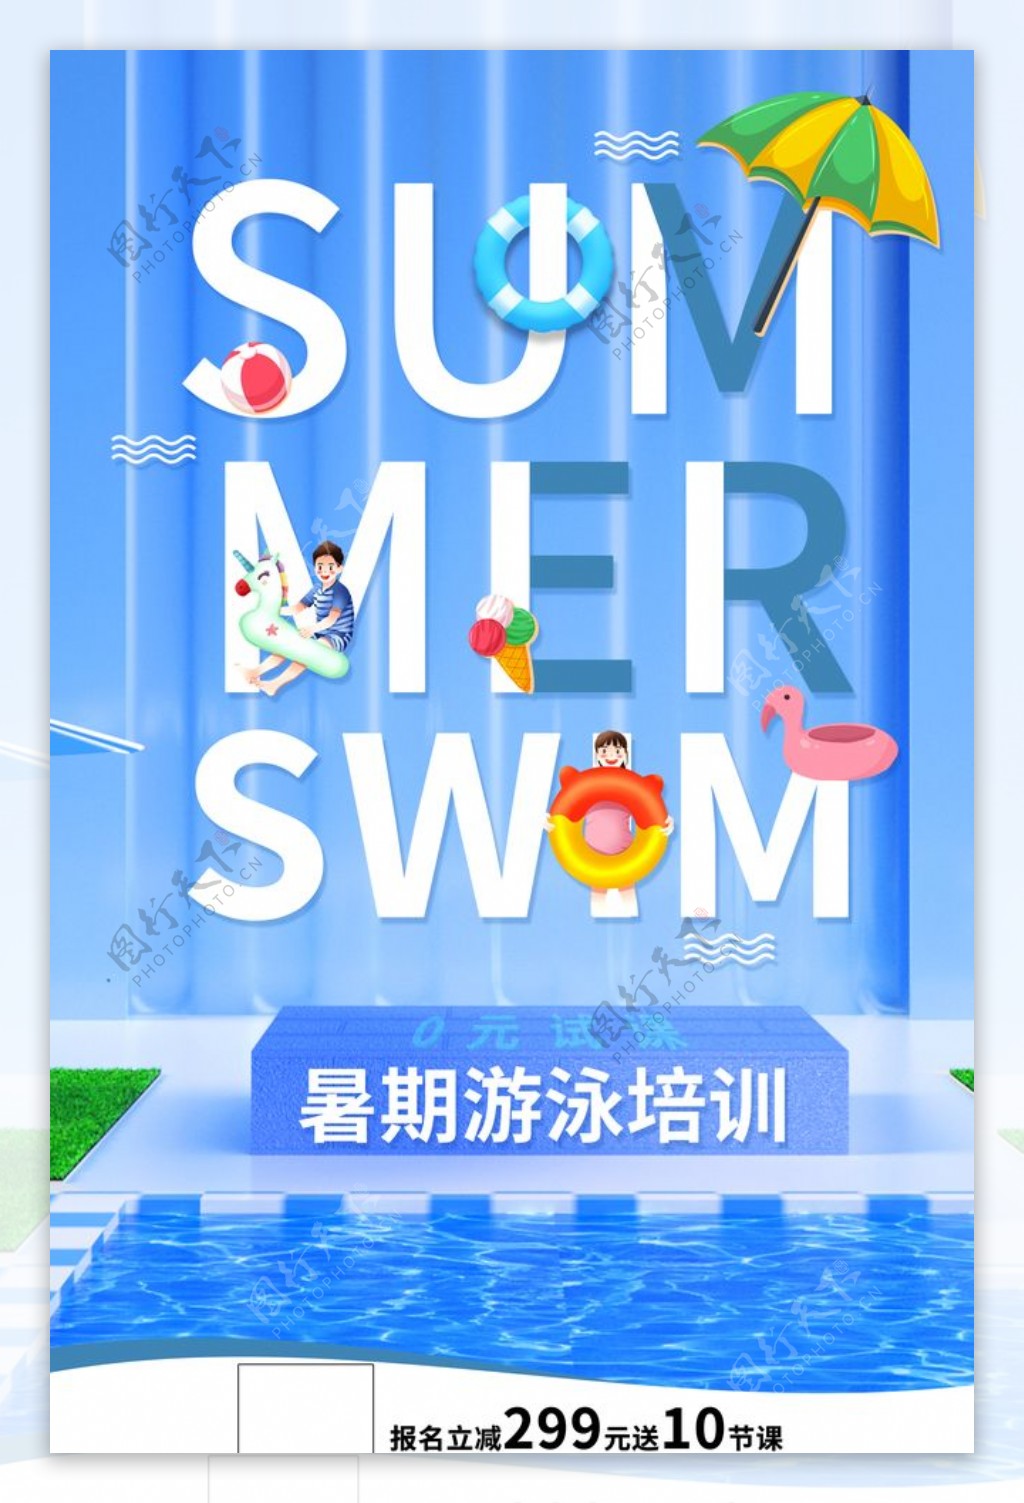 暑期游泳培训班海报设计模板